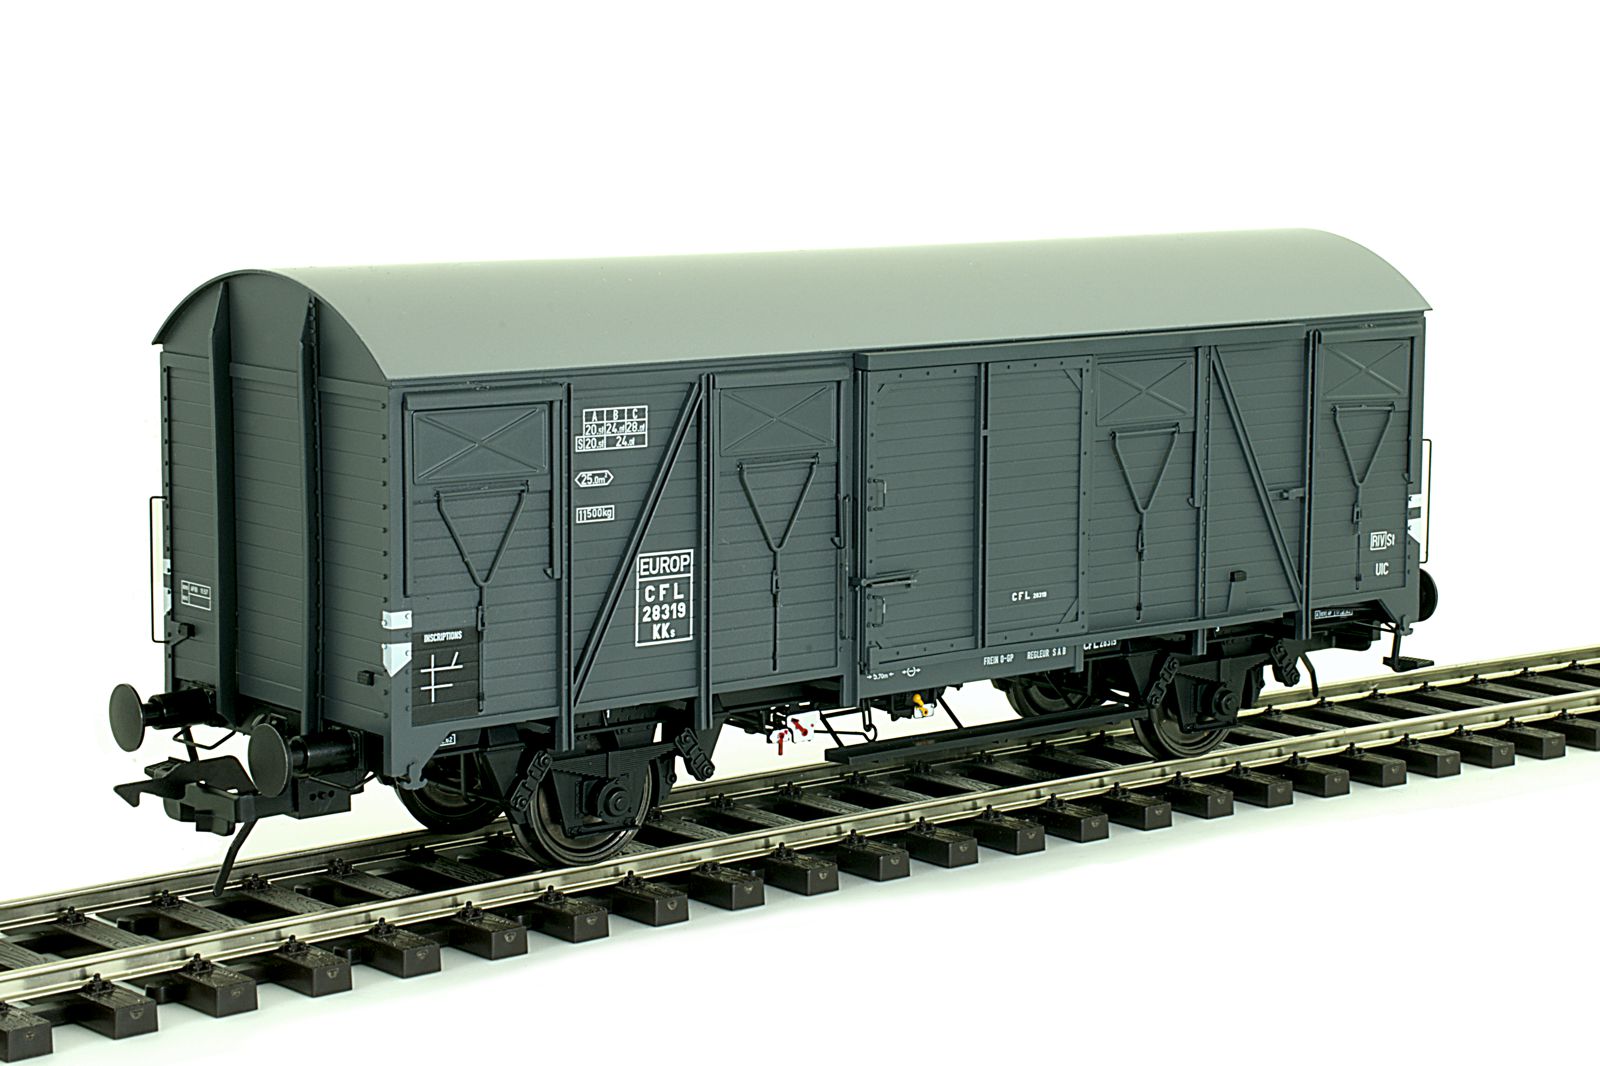 CFL gedeckt GüterWagen K4 Ep3 Stahldach, eisengrau RAL 7011, Betriebsnummer 28 319